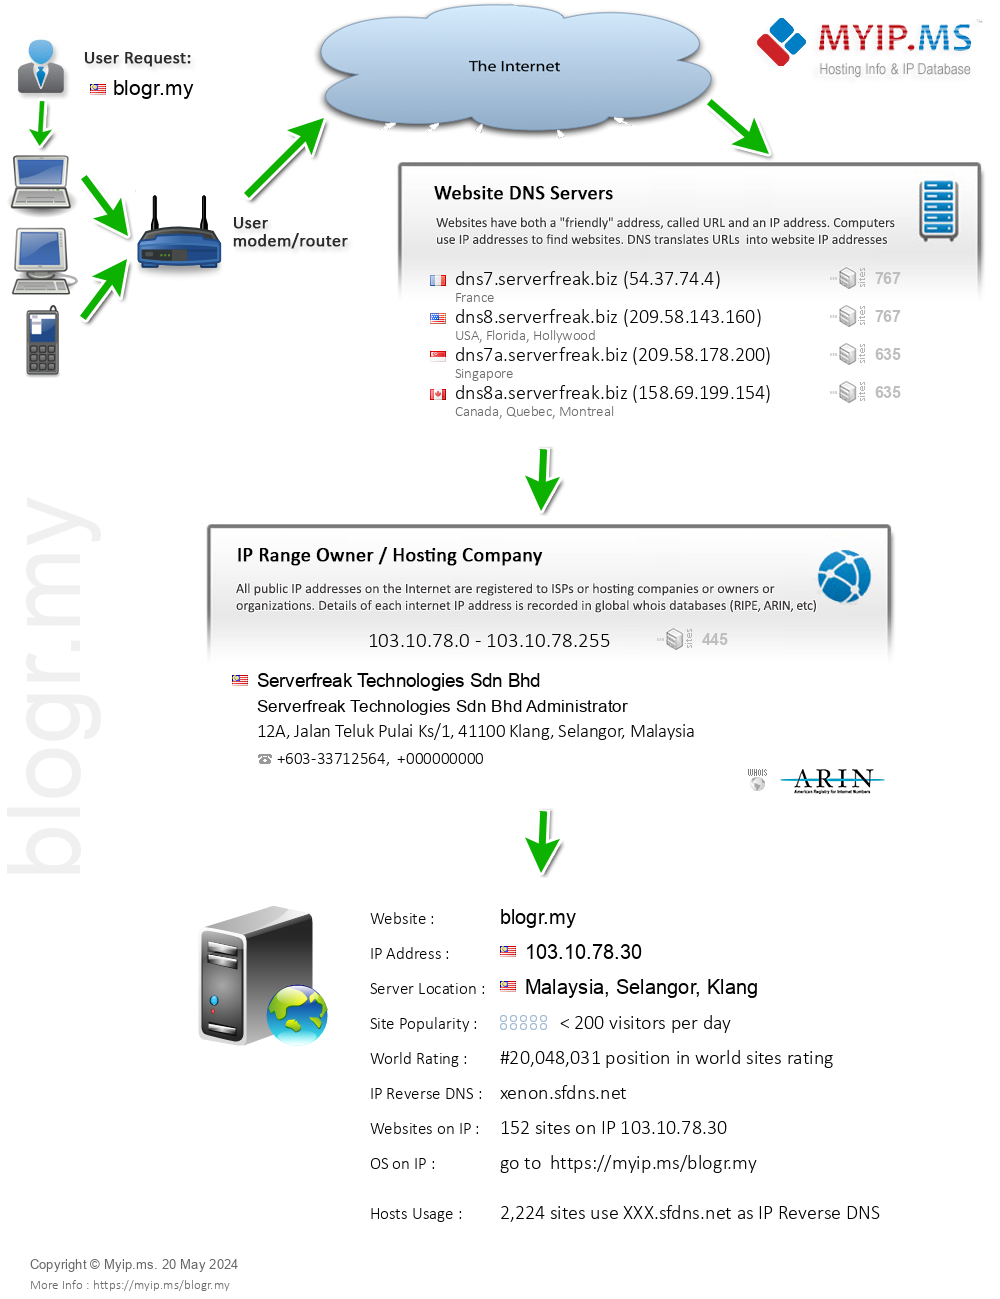 Blogr.my - Website Hosting Visual IP Diagram